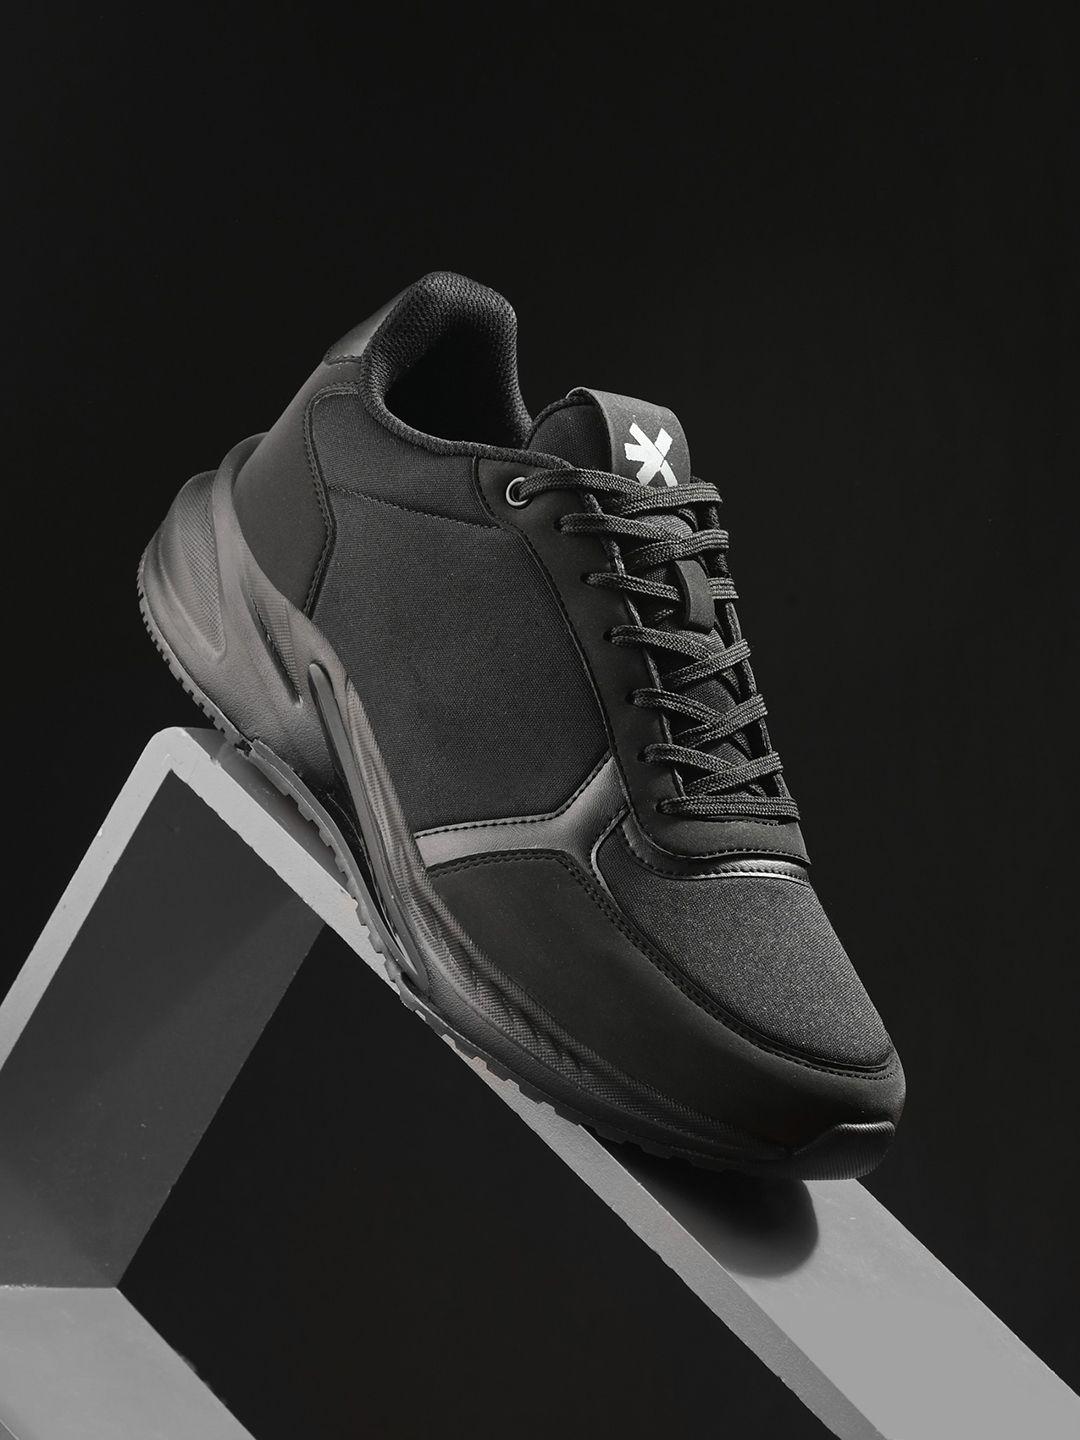 hrx-by-hrithik-roshan-men-fighter-black-textured-running-shoes